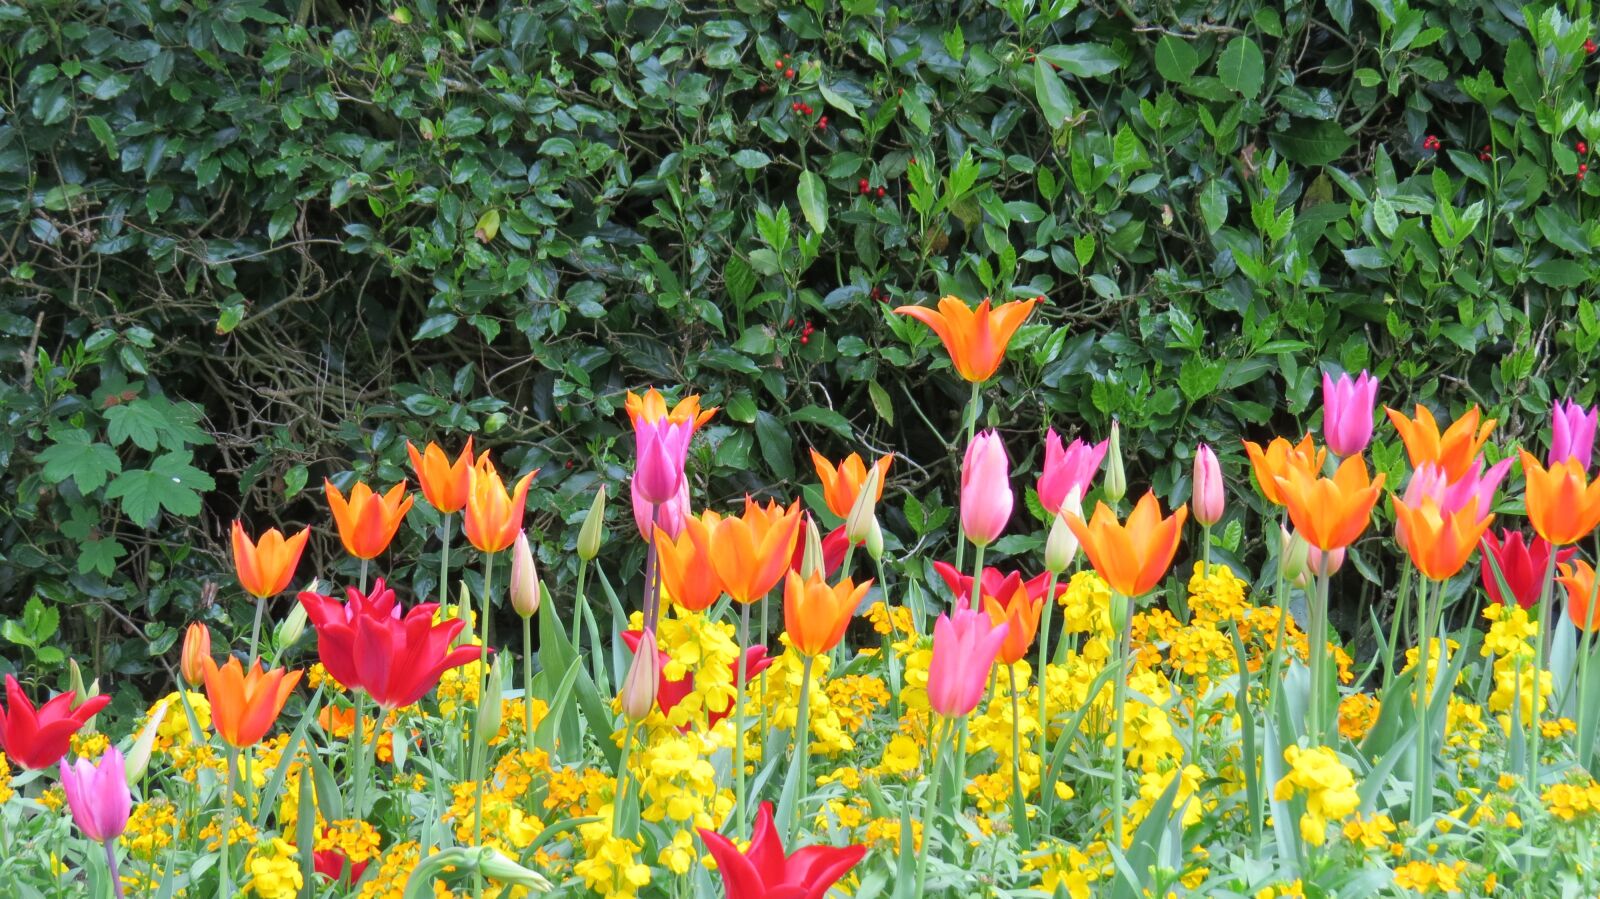 Canon PowerShot SX50 HS sample photo. Tulips, garden, spring photography